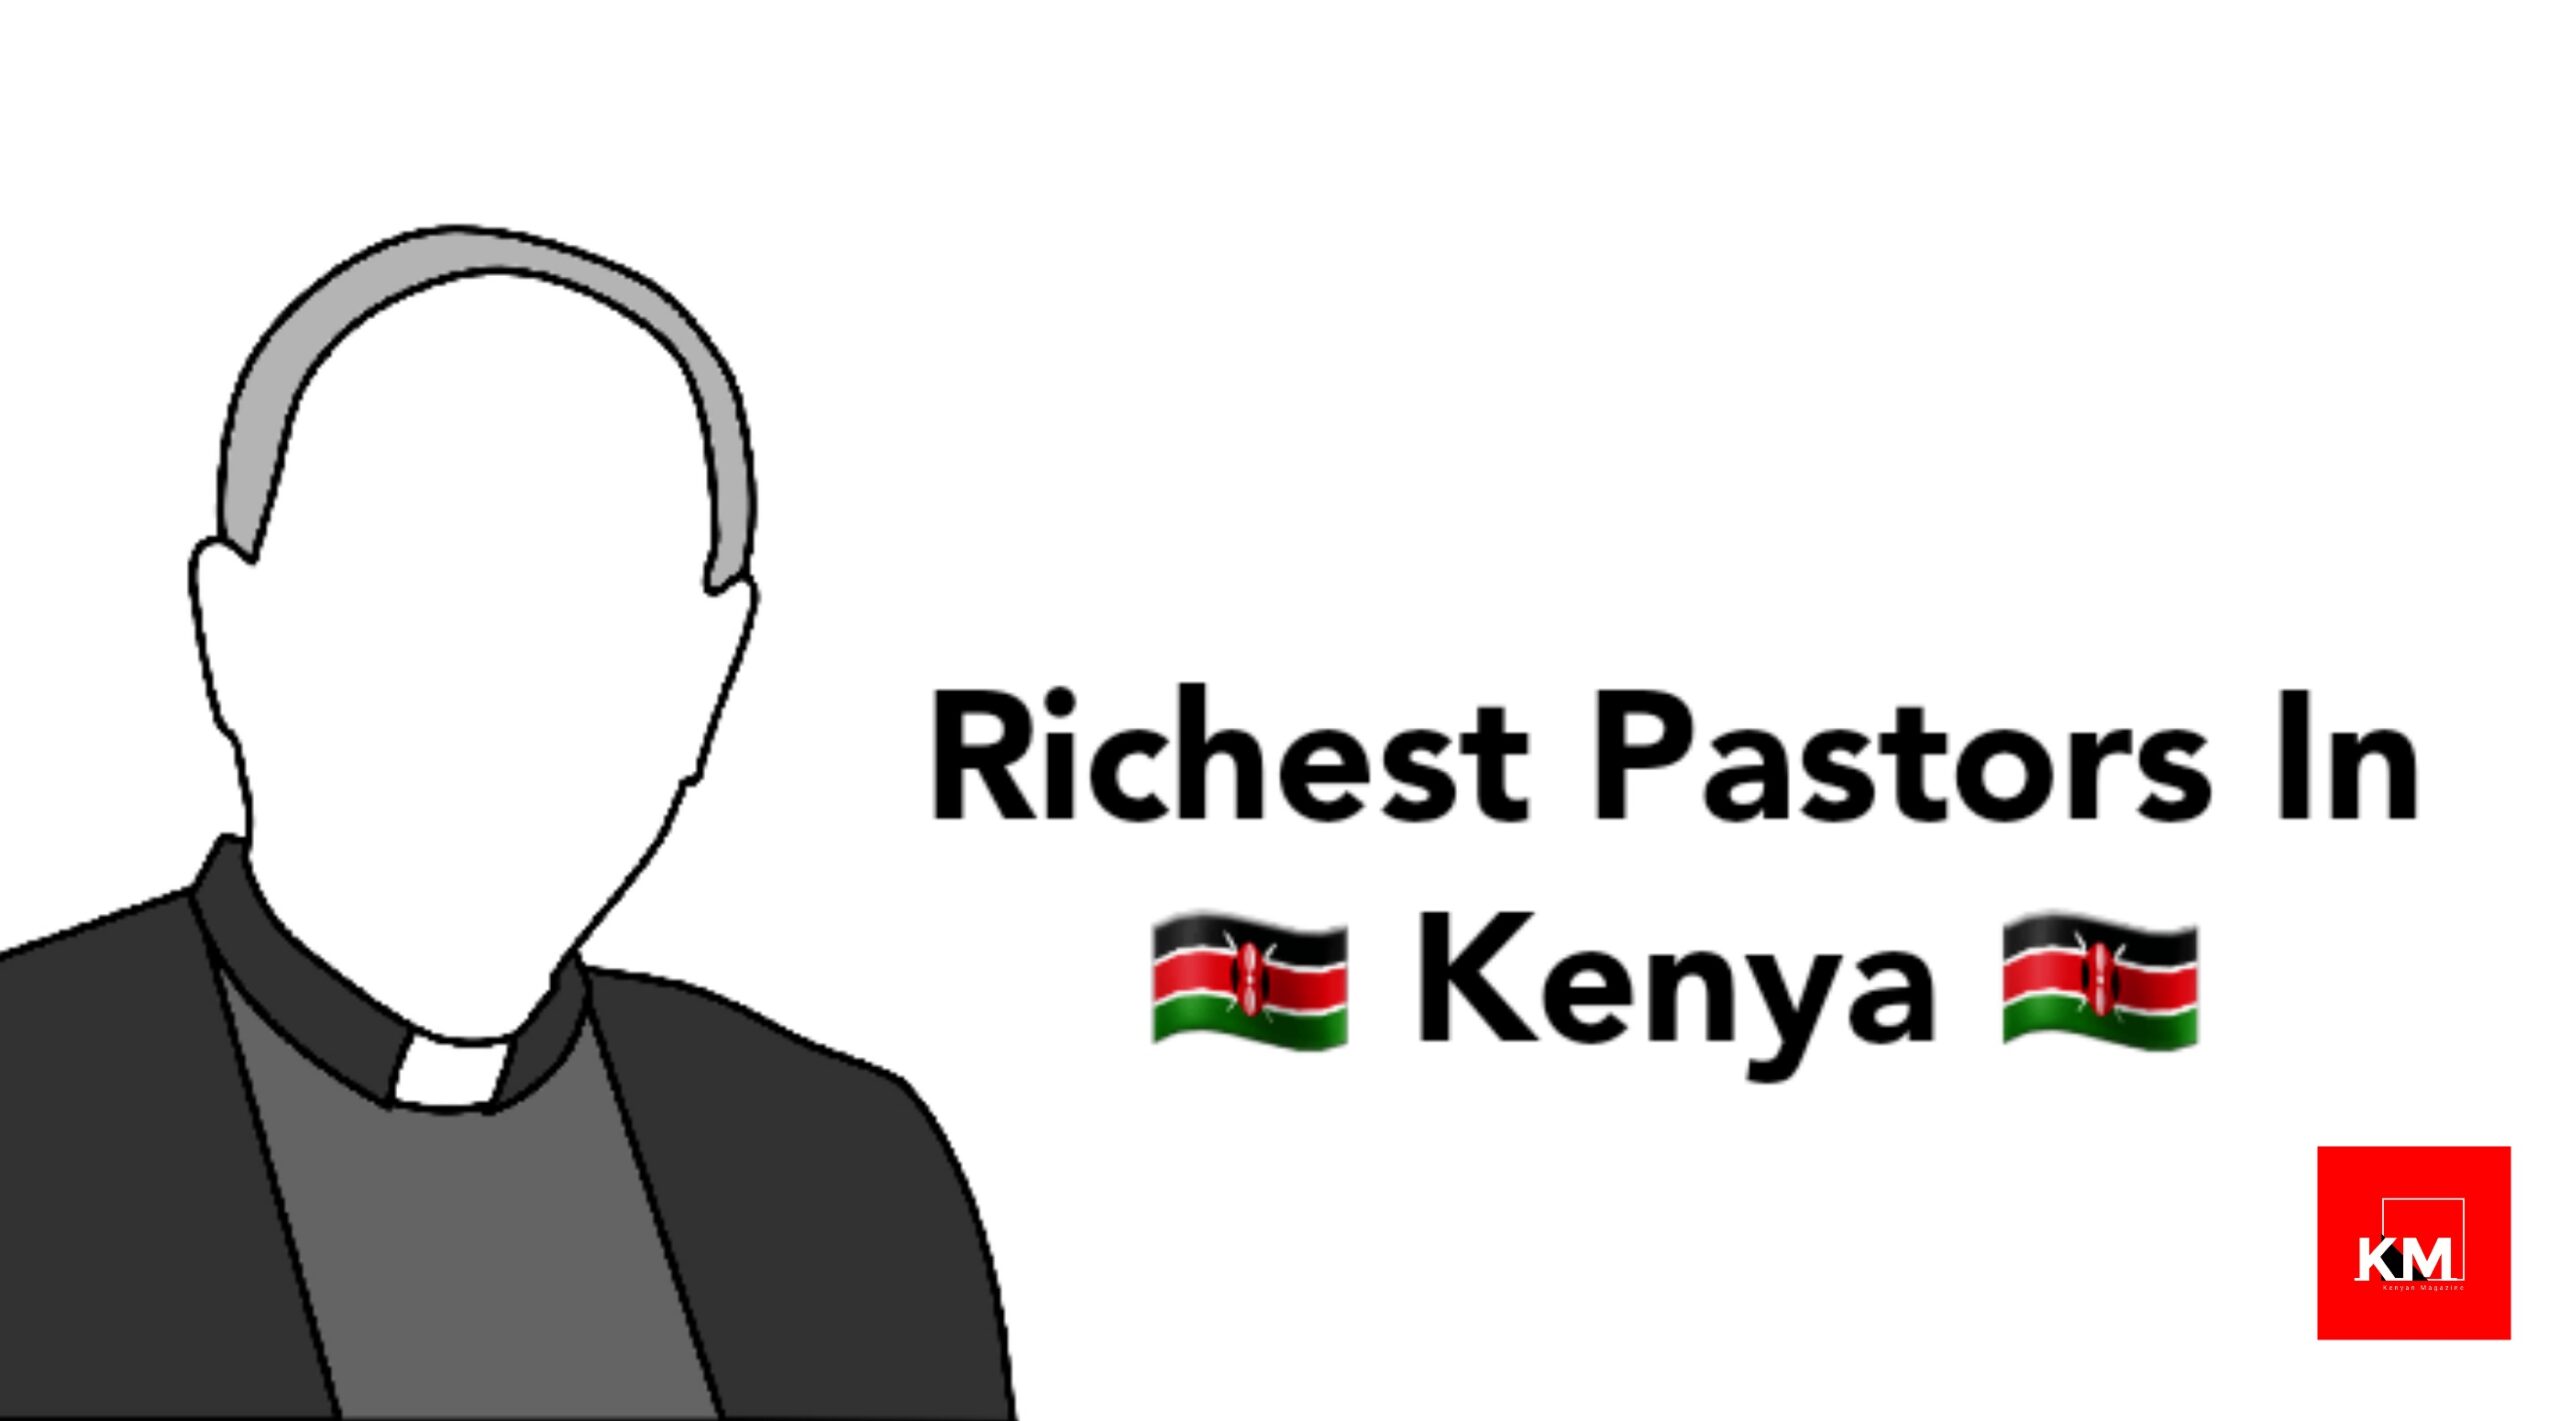 Richest pastors in Kenya